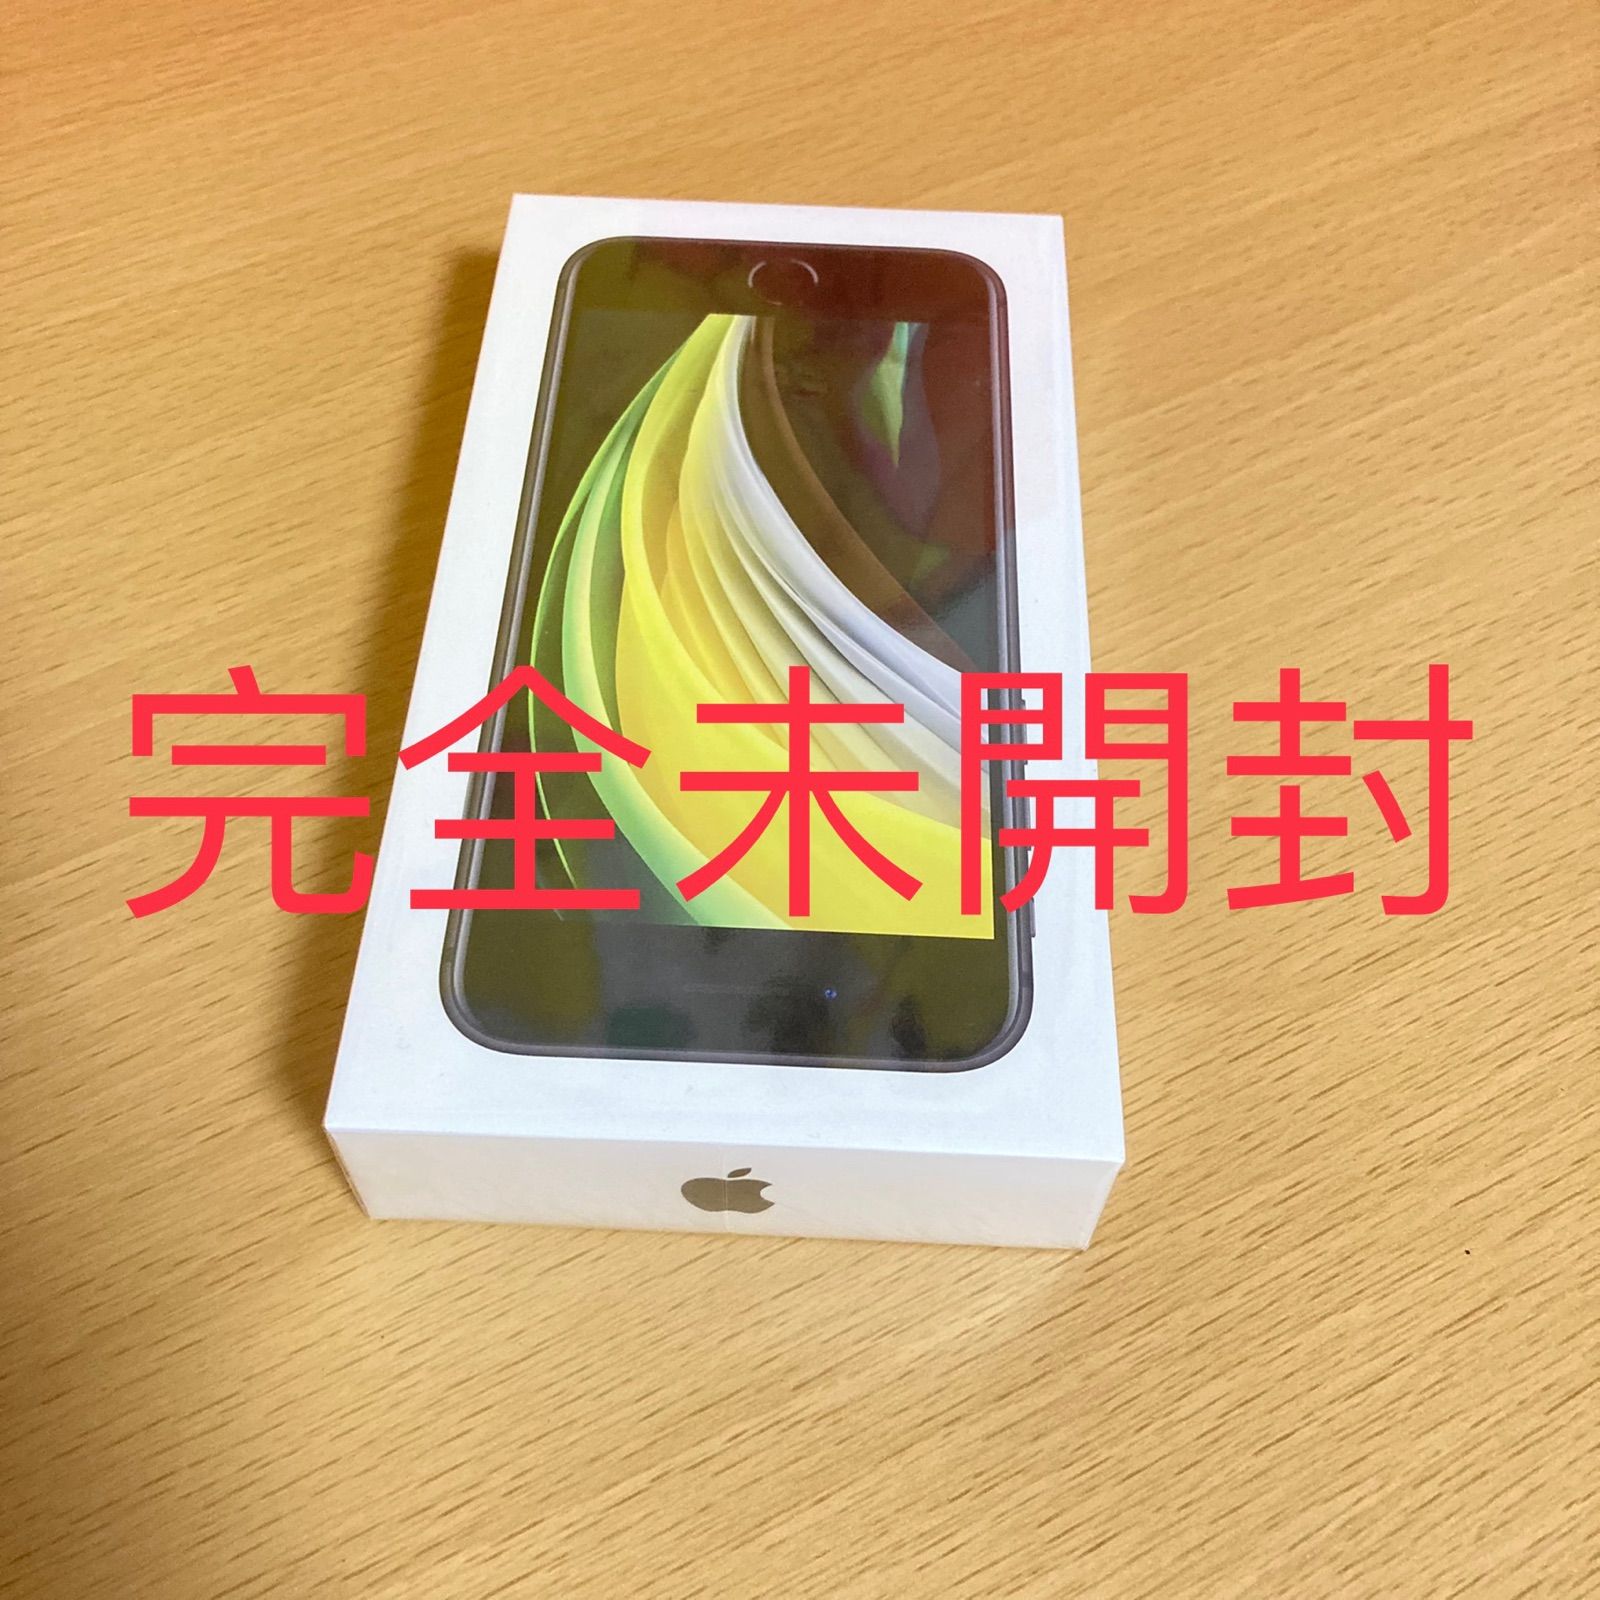 完全未開封】iPhone SE 第2世代 (SE2) ブラック64GB - メルカリ